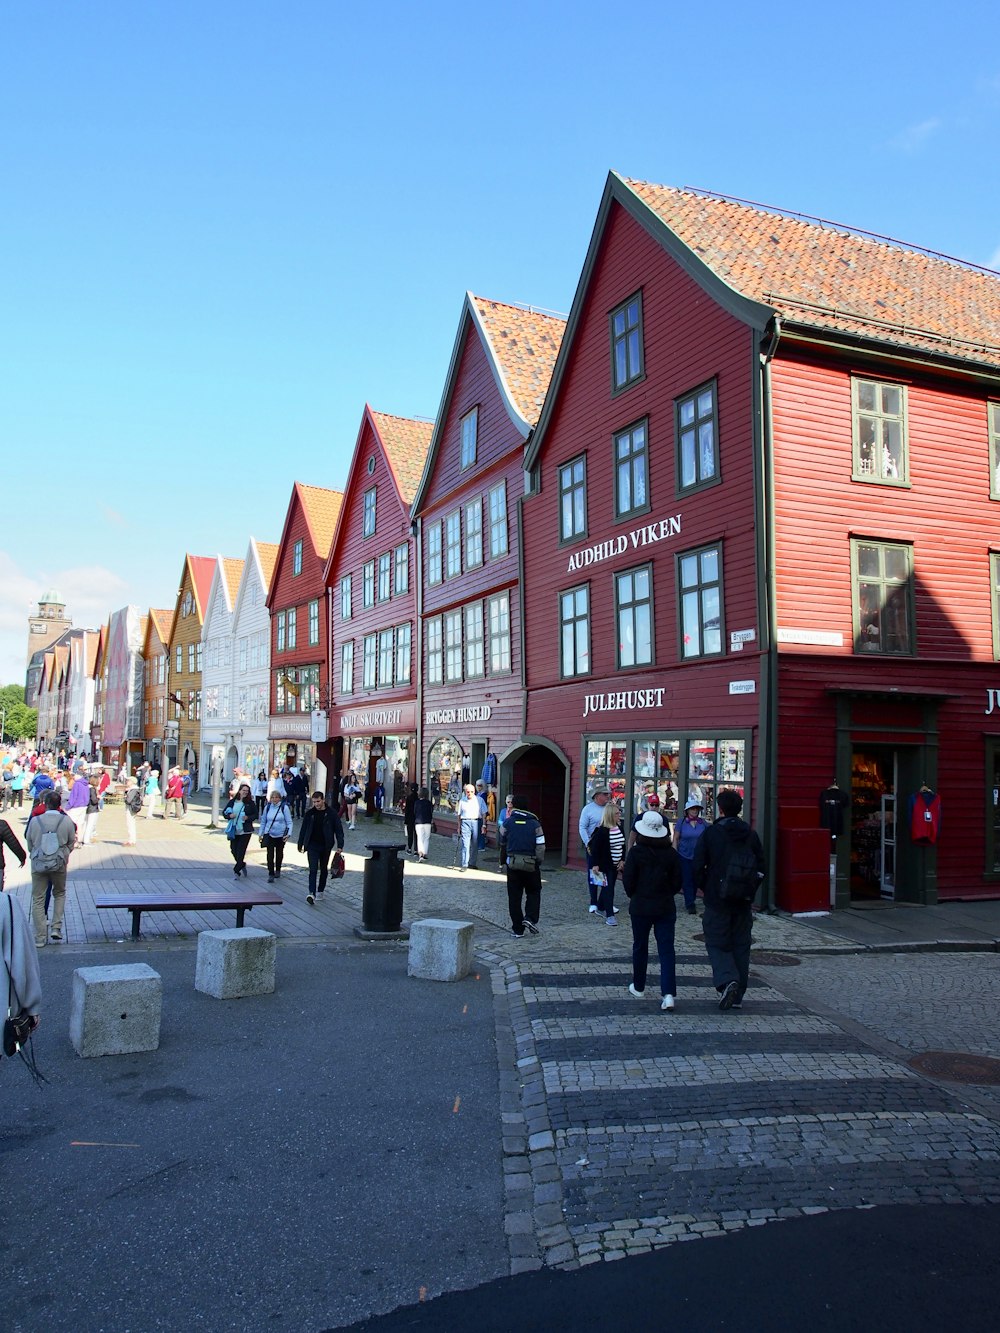 Personas caminando por la calle cerca de un edificio de hormigón rojo durante el día